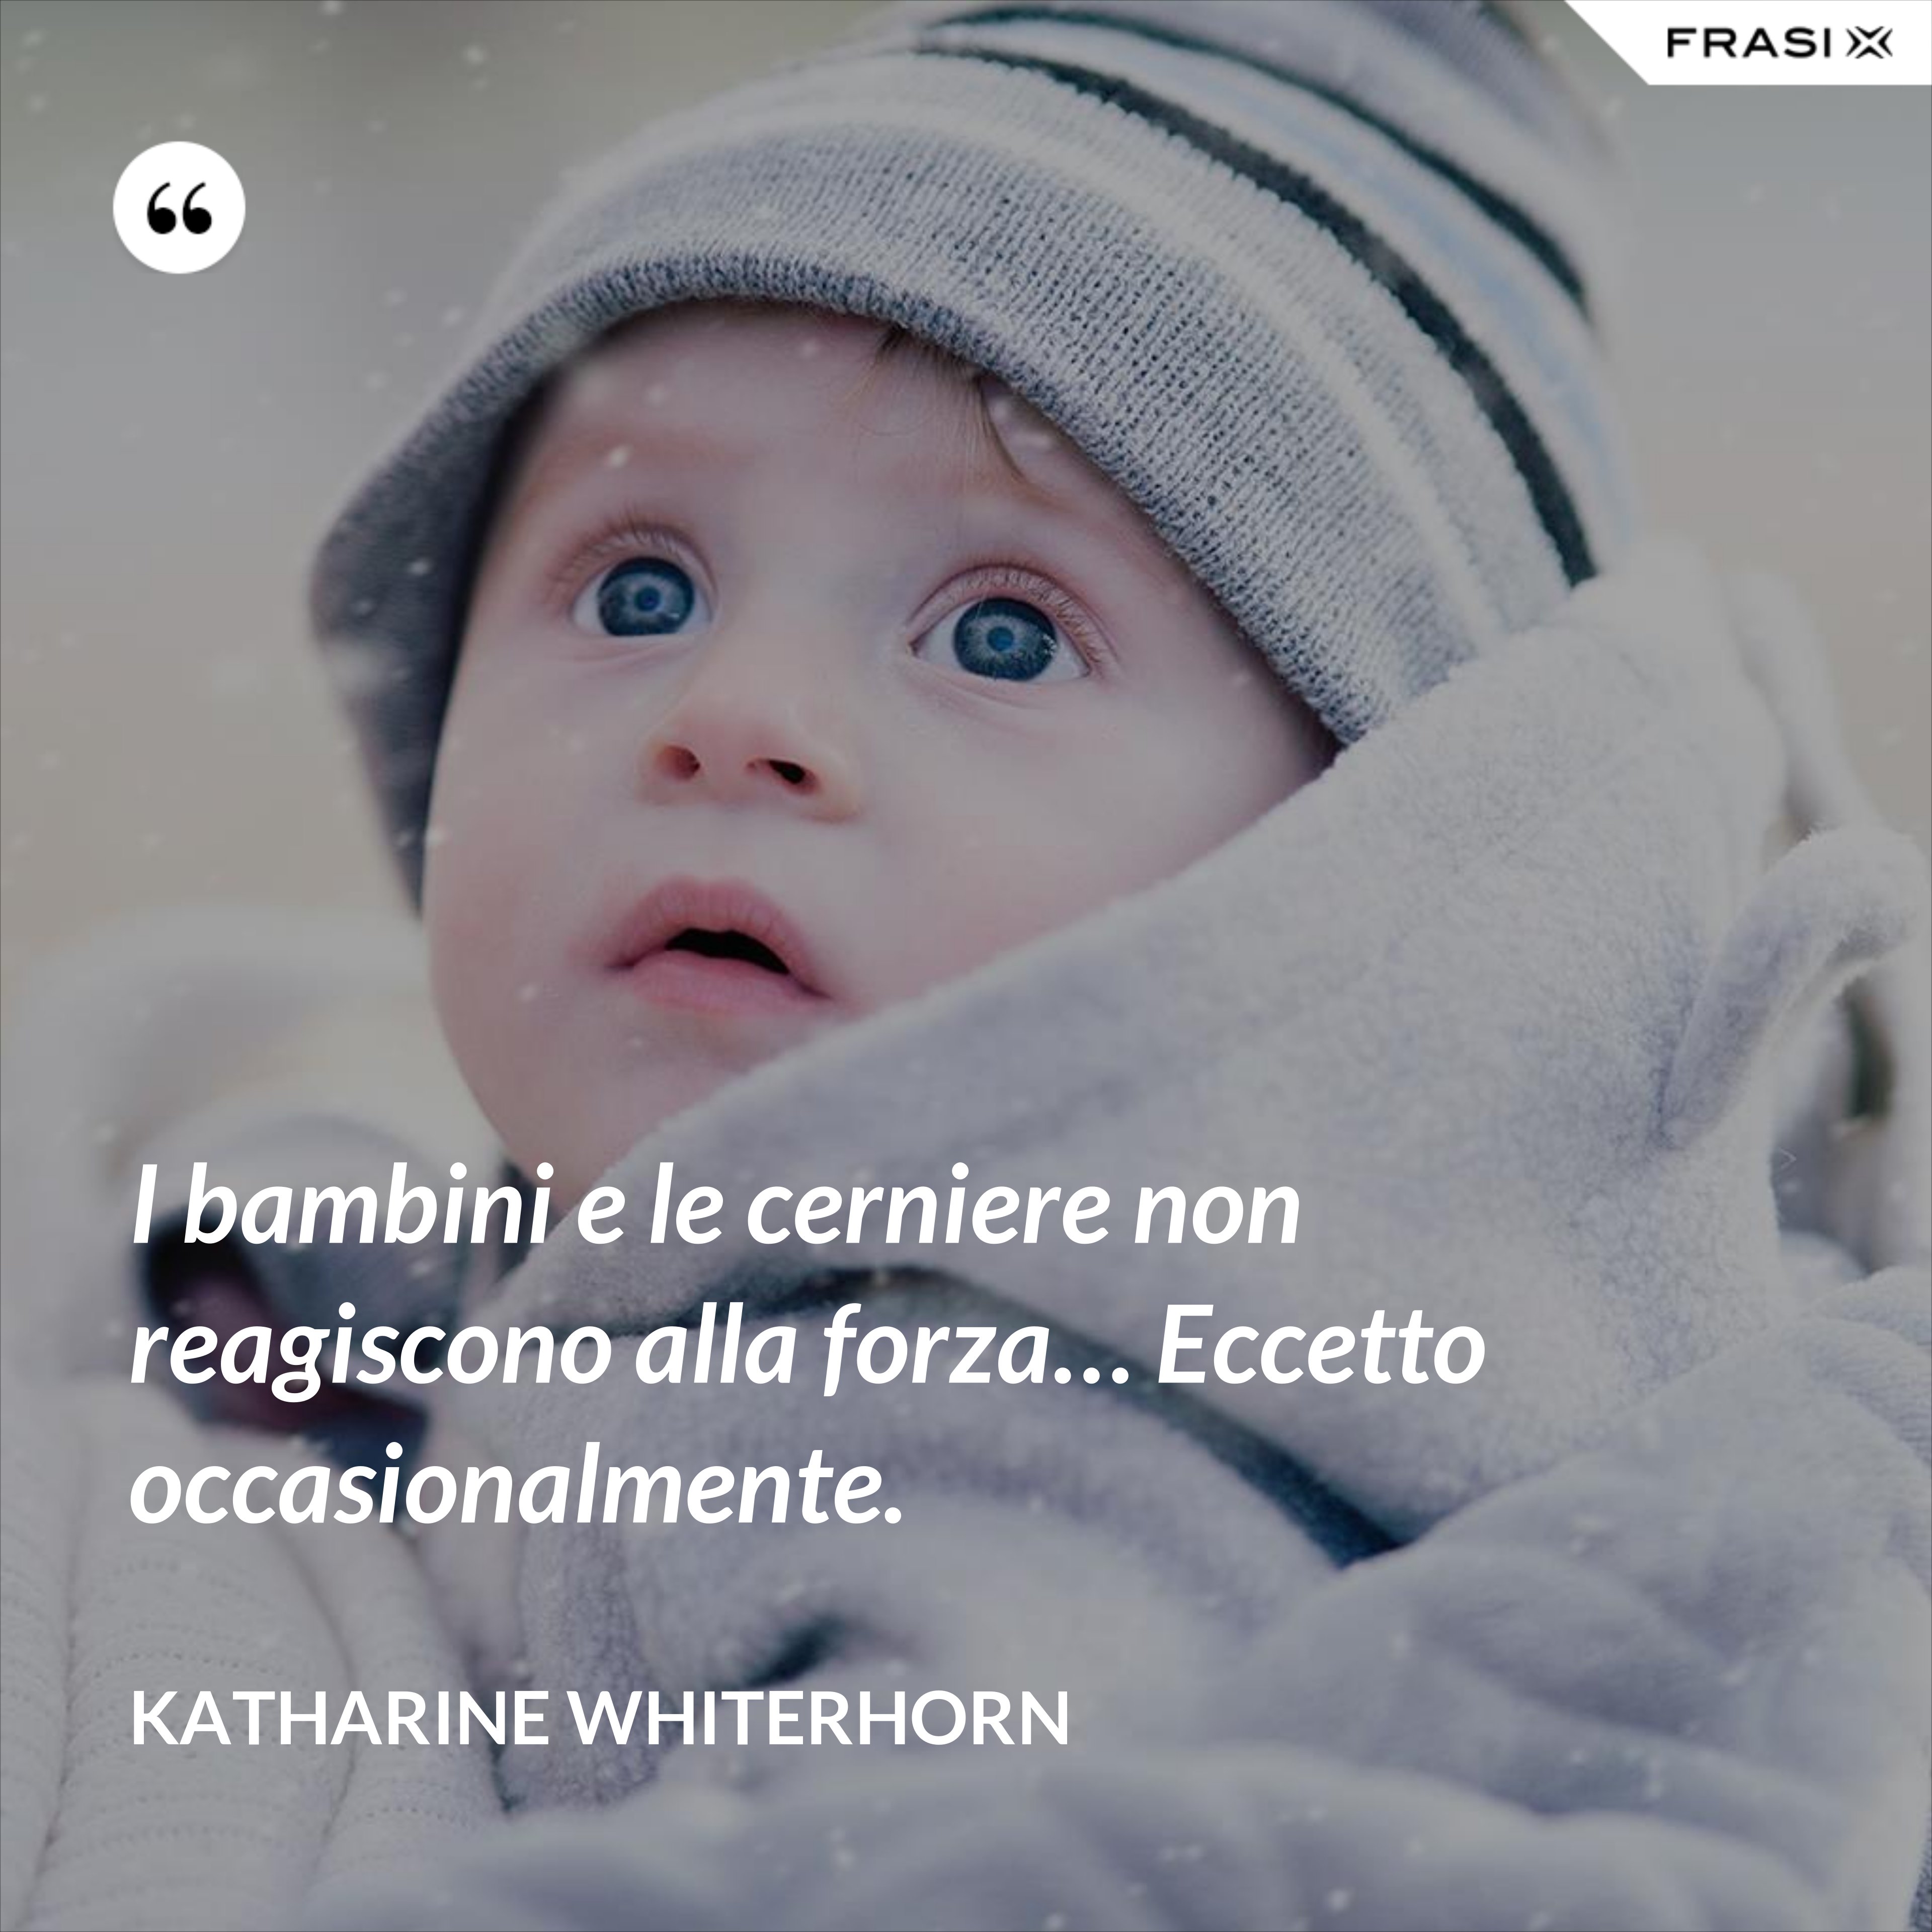 I bambini e le cerniere non reagiscono alla forza… Eccetto occasionalmente. - Katharine Whiterhorn